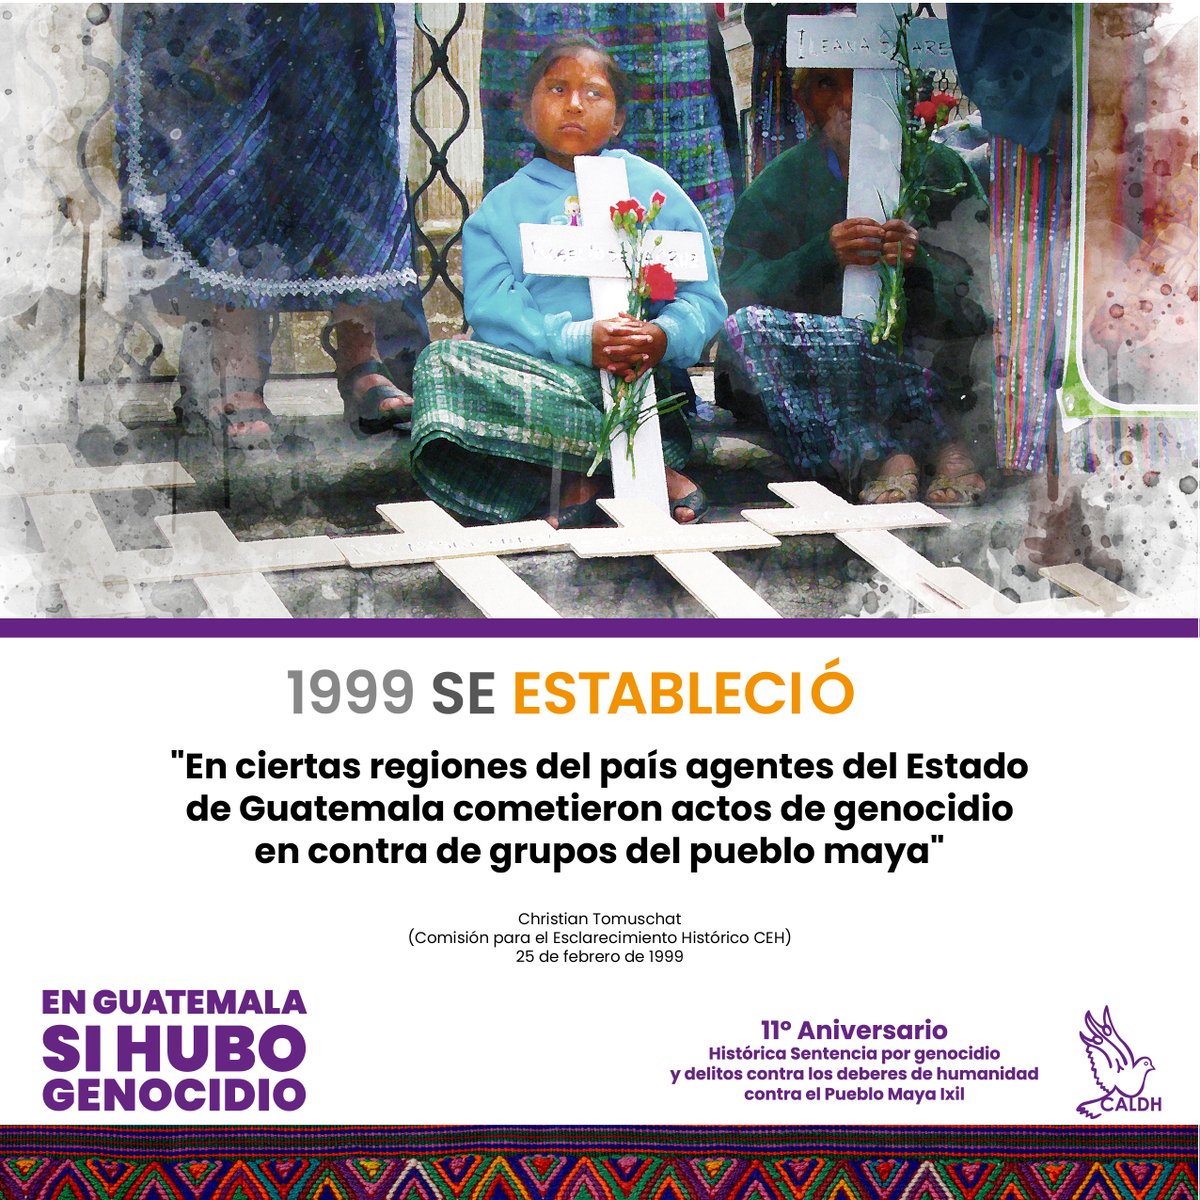 'En ciertas regiones del país agentes del estado de Guatemala cometieron actos de genocidio en contra de grupos del pueblo maya' Discurso de Christian Tomuschat durante la presentación y entrega del Informe de la CEH 25 de febrero de 1999. En #Guatemala #SihuboGenocidio